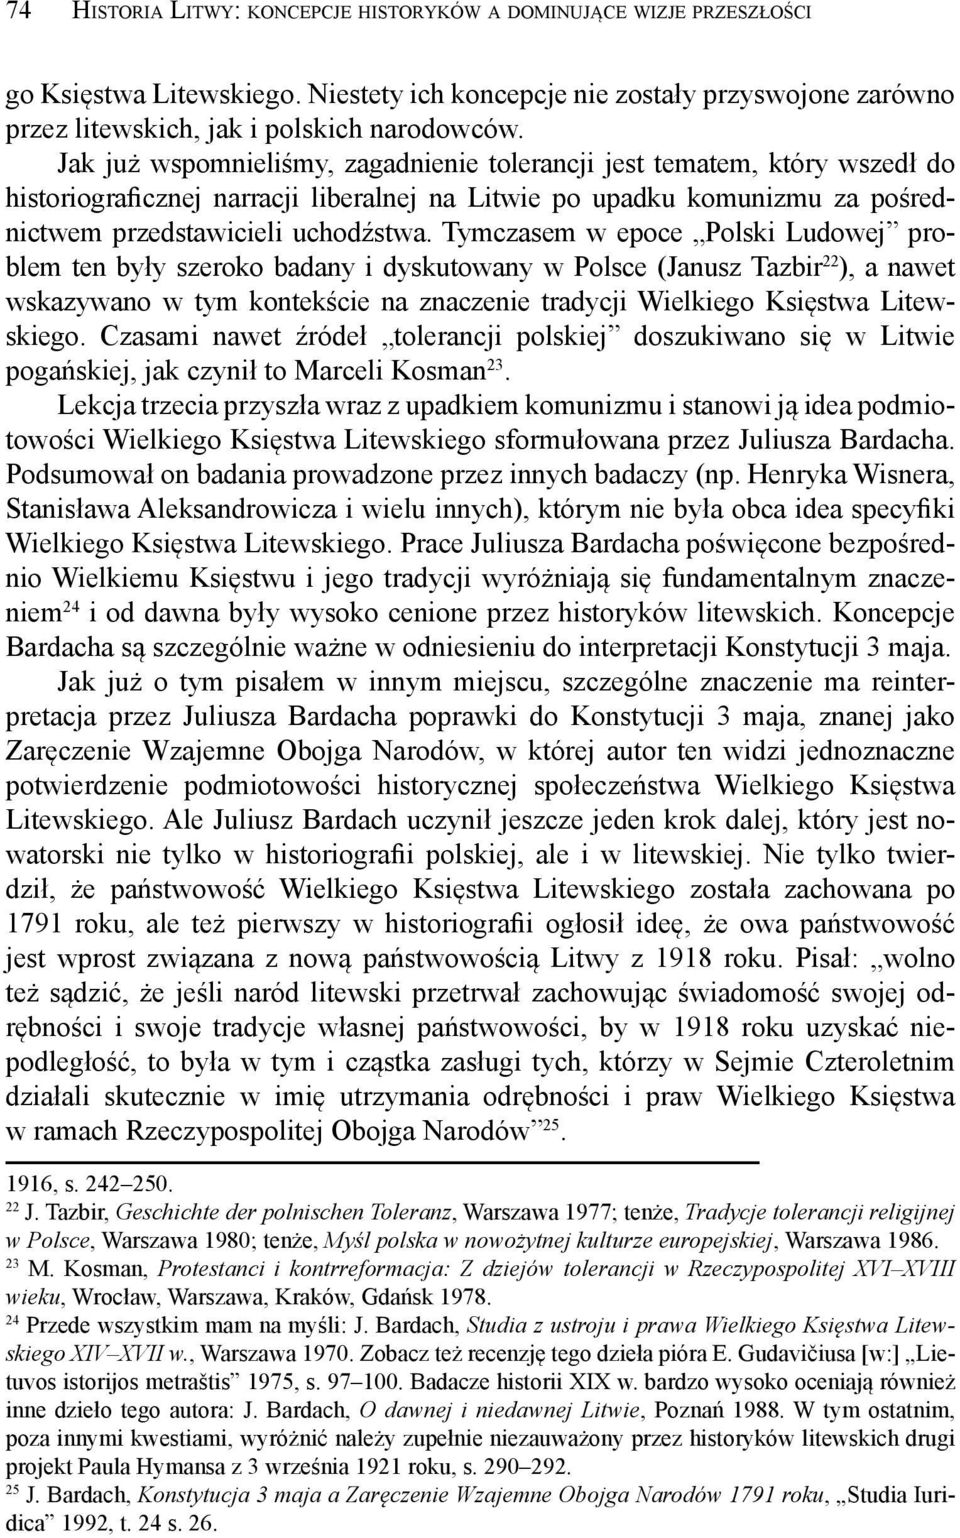 Tymczasem w epoce Polski Ludowej problem ten były szeroko badany i dyskutowany w Polsce (Janusz Tazbir 22 ), a nawet wskazywano w tym kontekście na znaczenie tradycji Wielkiego Księstwa Litewskiego.